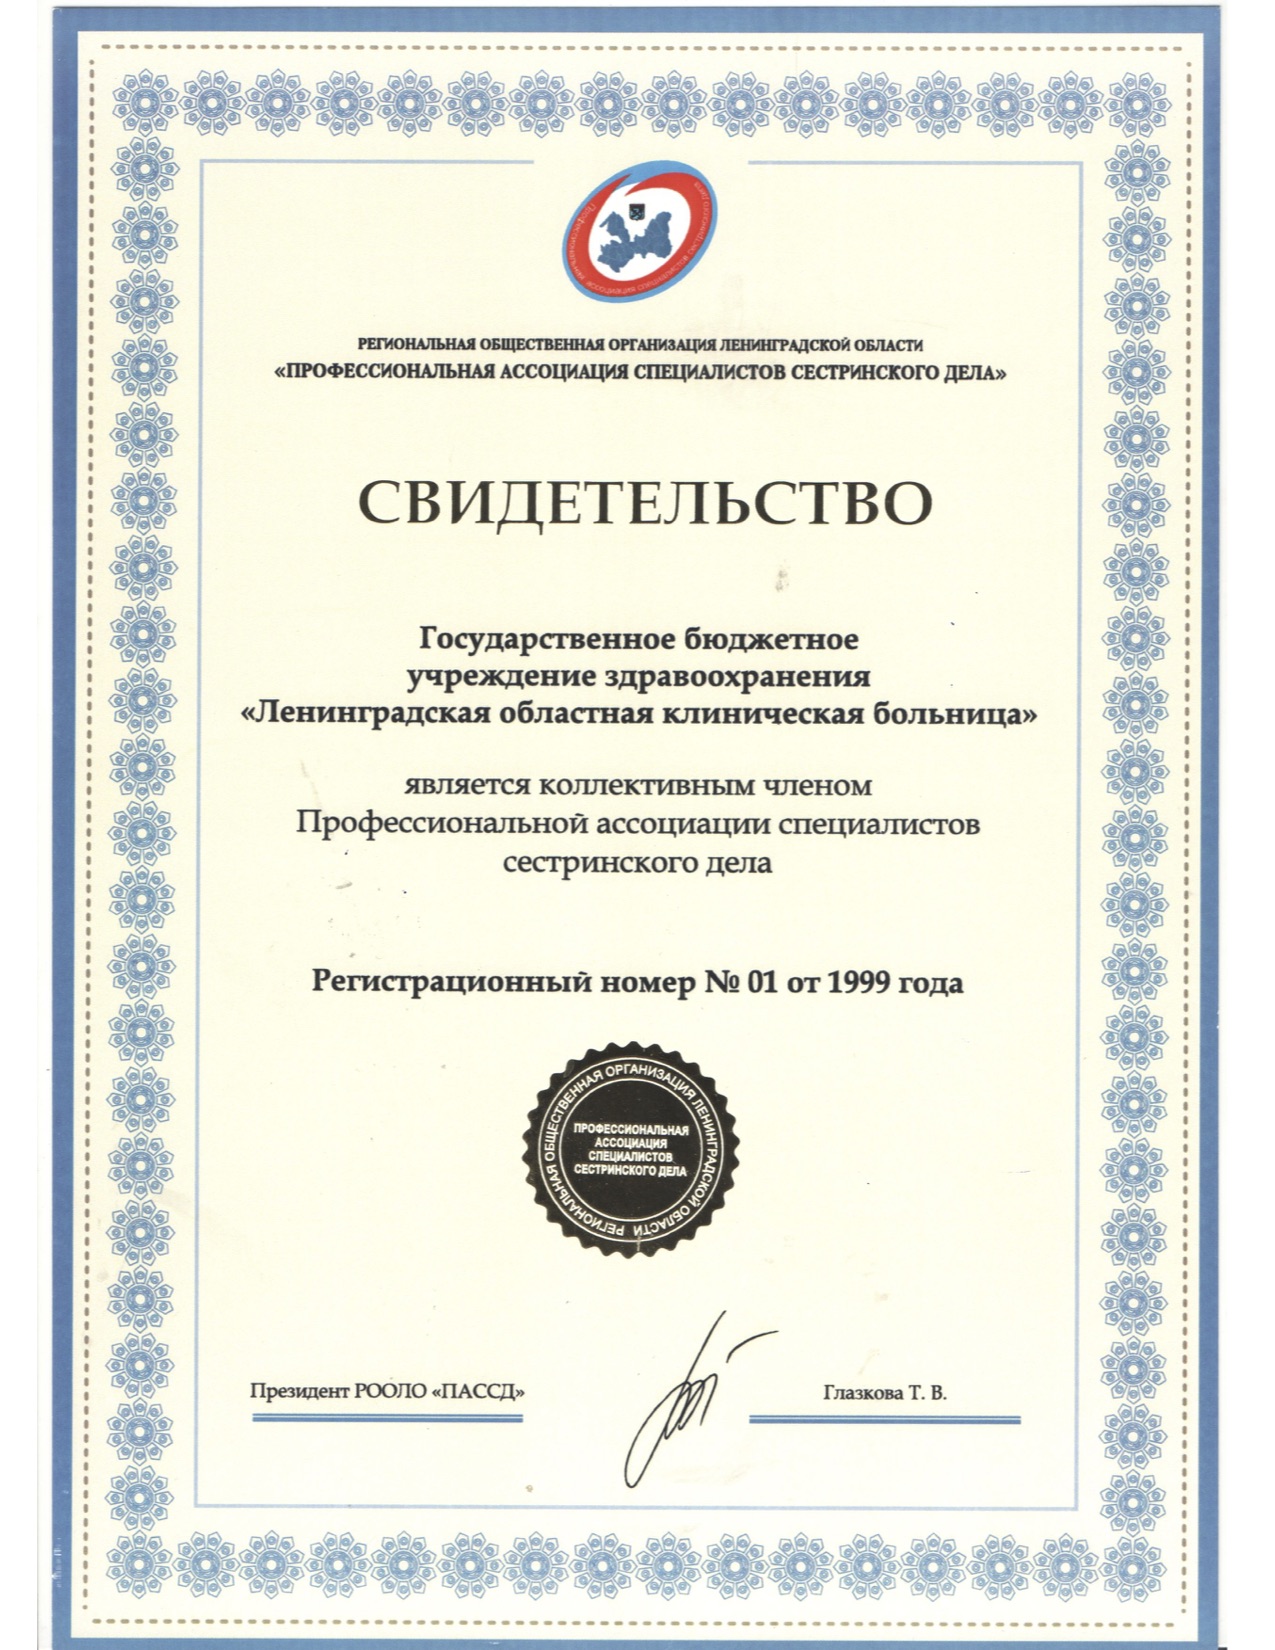 ГБУЗ ЛОКБ: сертификат